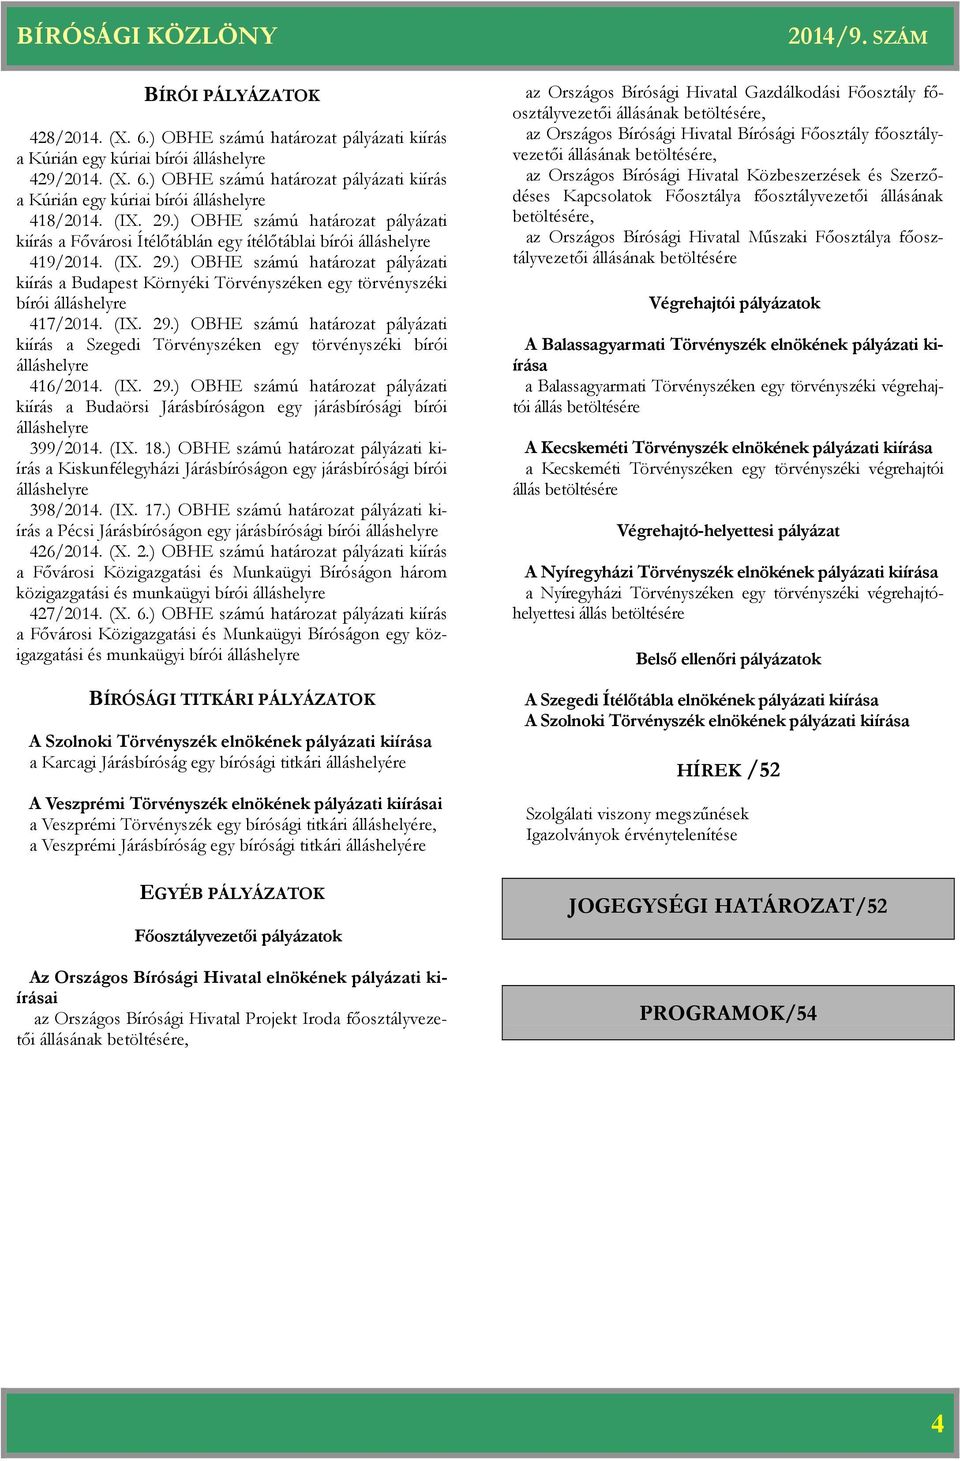 ) OBHE számú pályázati kiírás a Budapest Környéki Törvényszéken egy törvényszéki bírói álláshelyre 417/2014. (IX. 29.